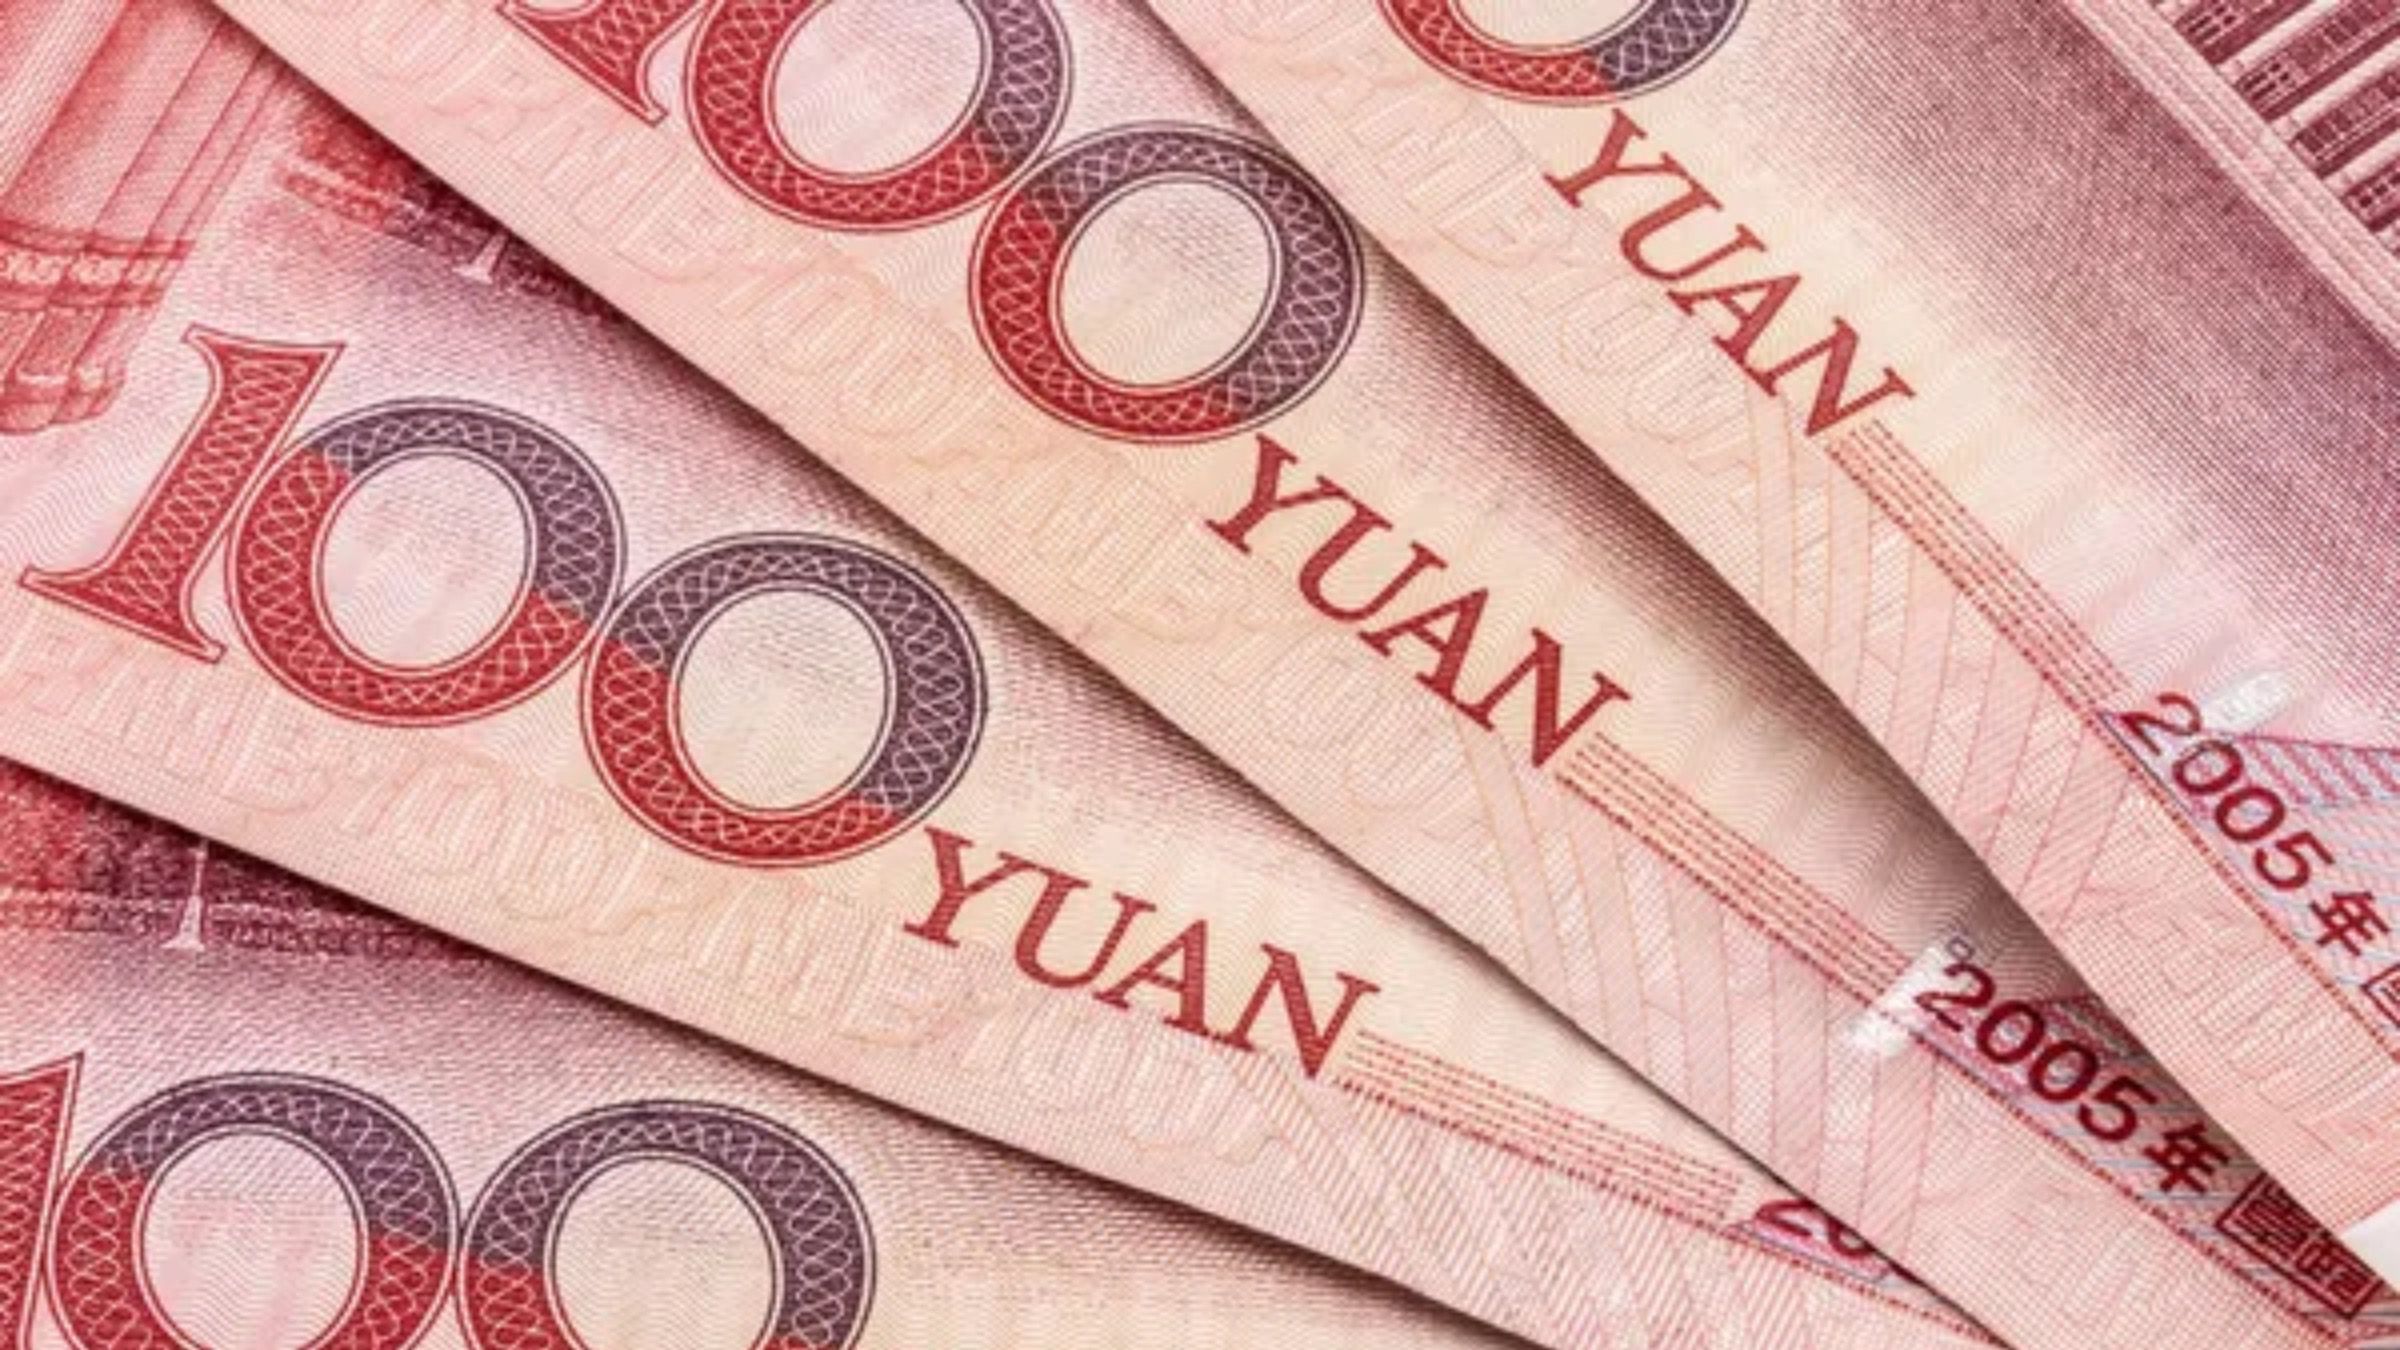 Саудовская Аравия рассматривает оплату юанями вместо долларов для продажи нефти Китаю, – СМИ